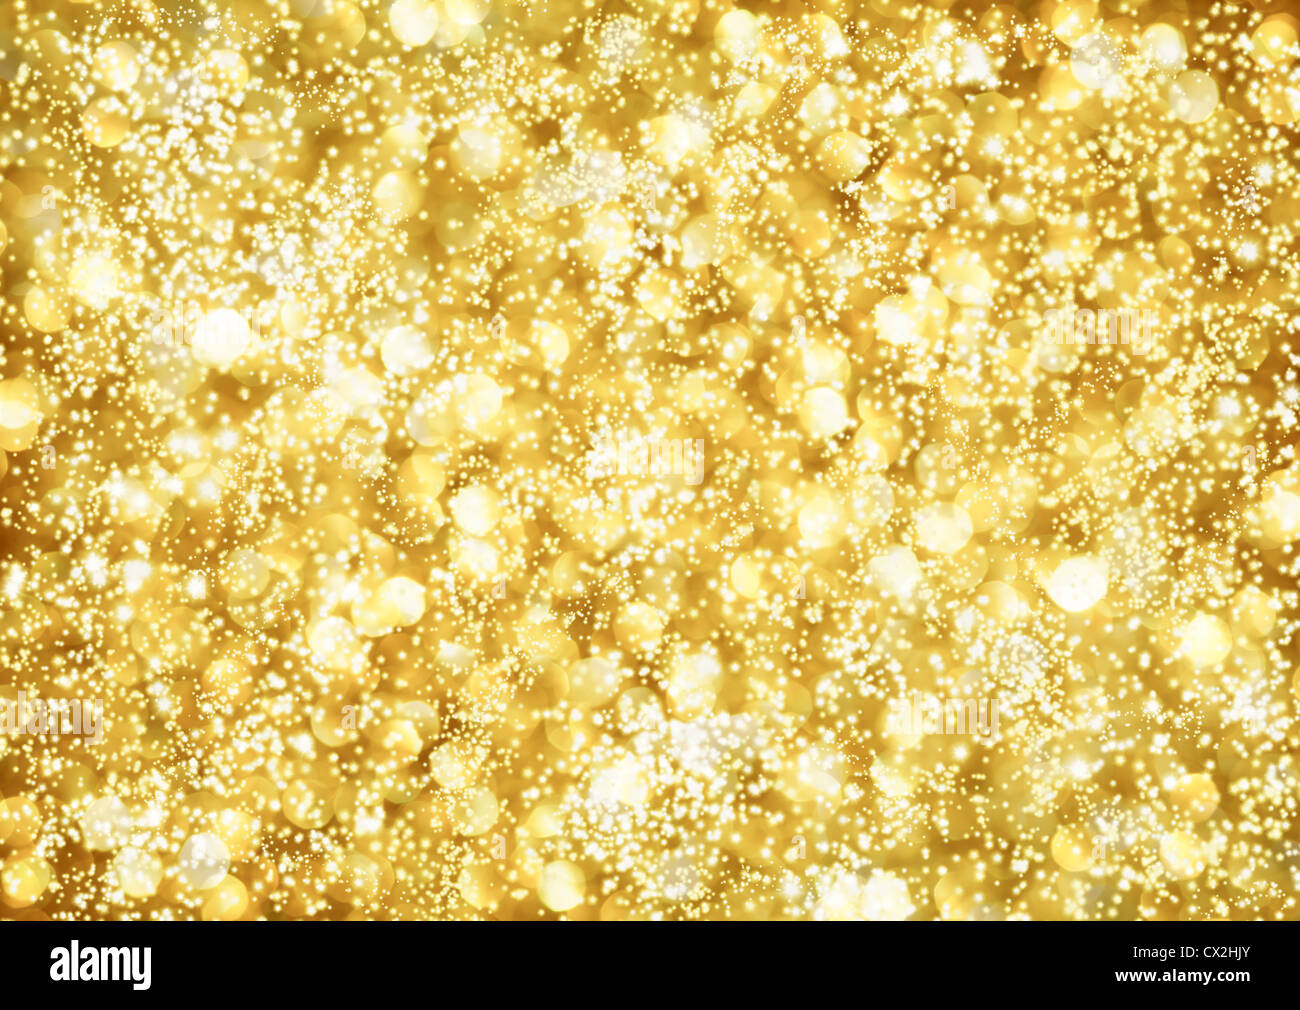 Zusammenfassung Hintergrund des goldenen Lichter Stockfoto